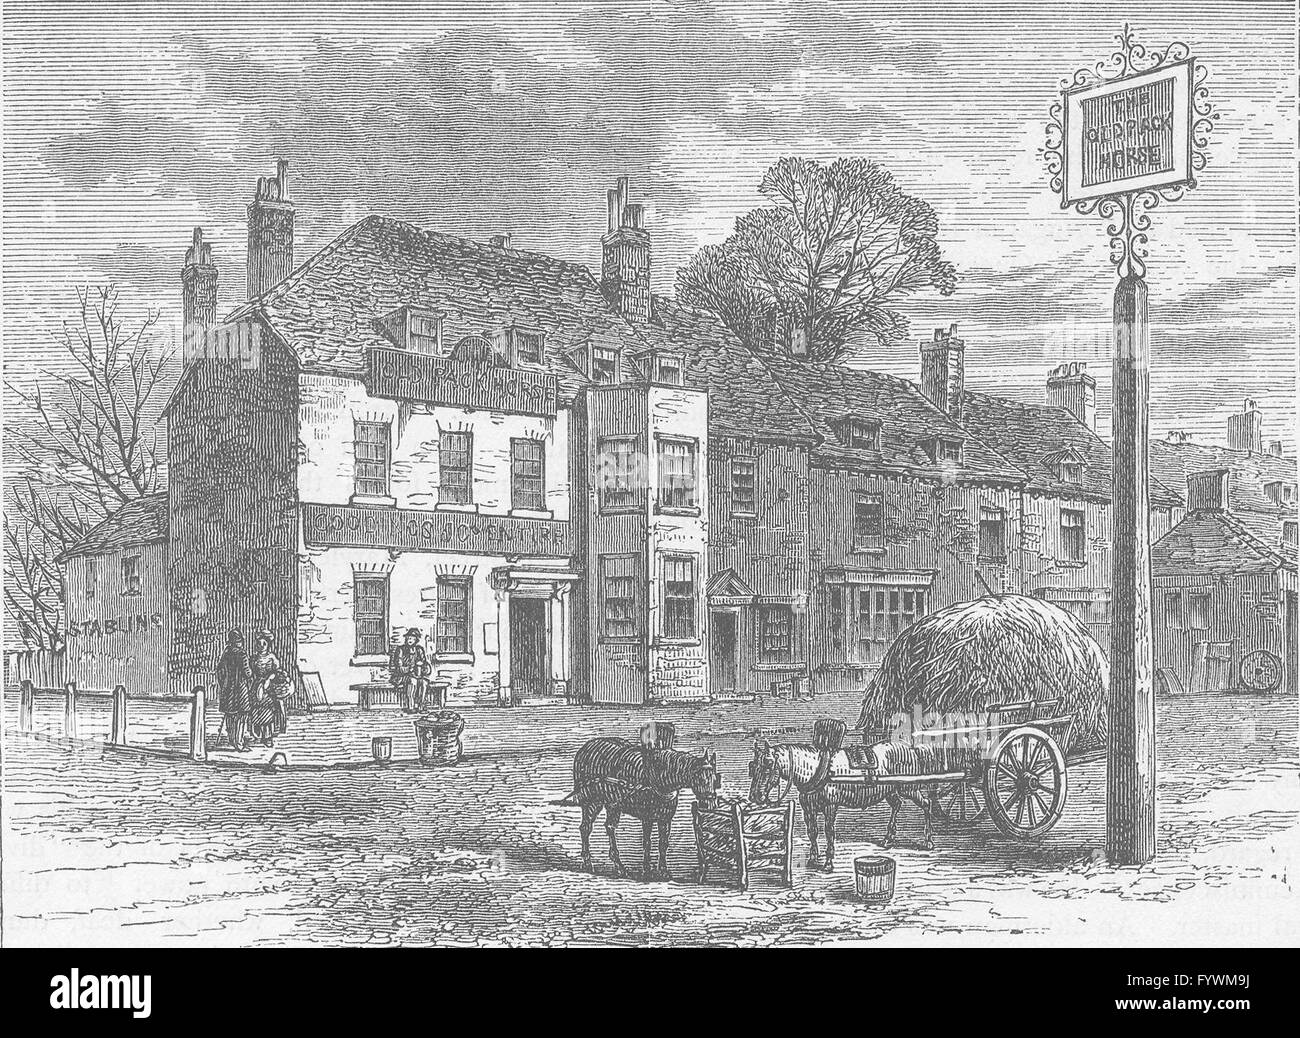 75015 : le vieux cheval 'pack' inn, Turnham Green. Londres, vieux print c1880 Banque D'Images